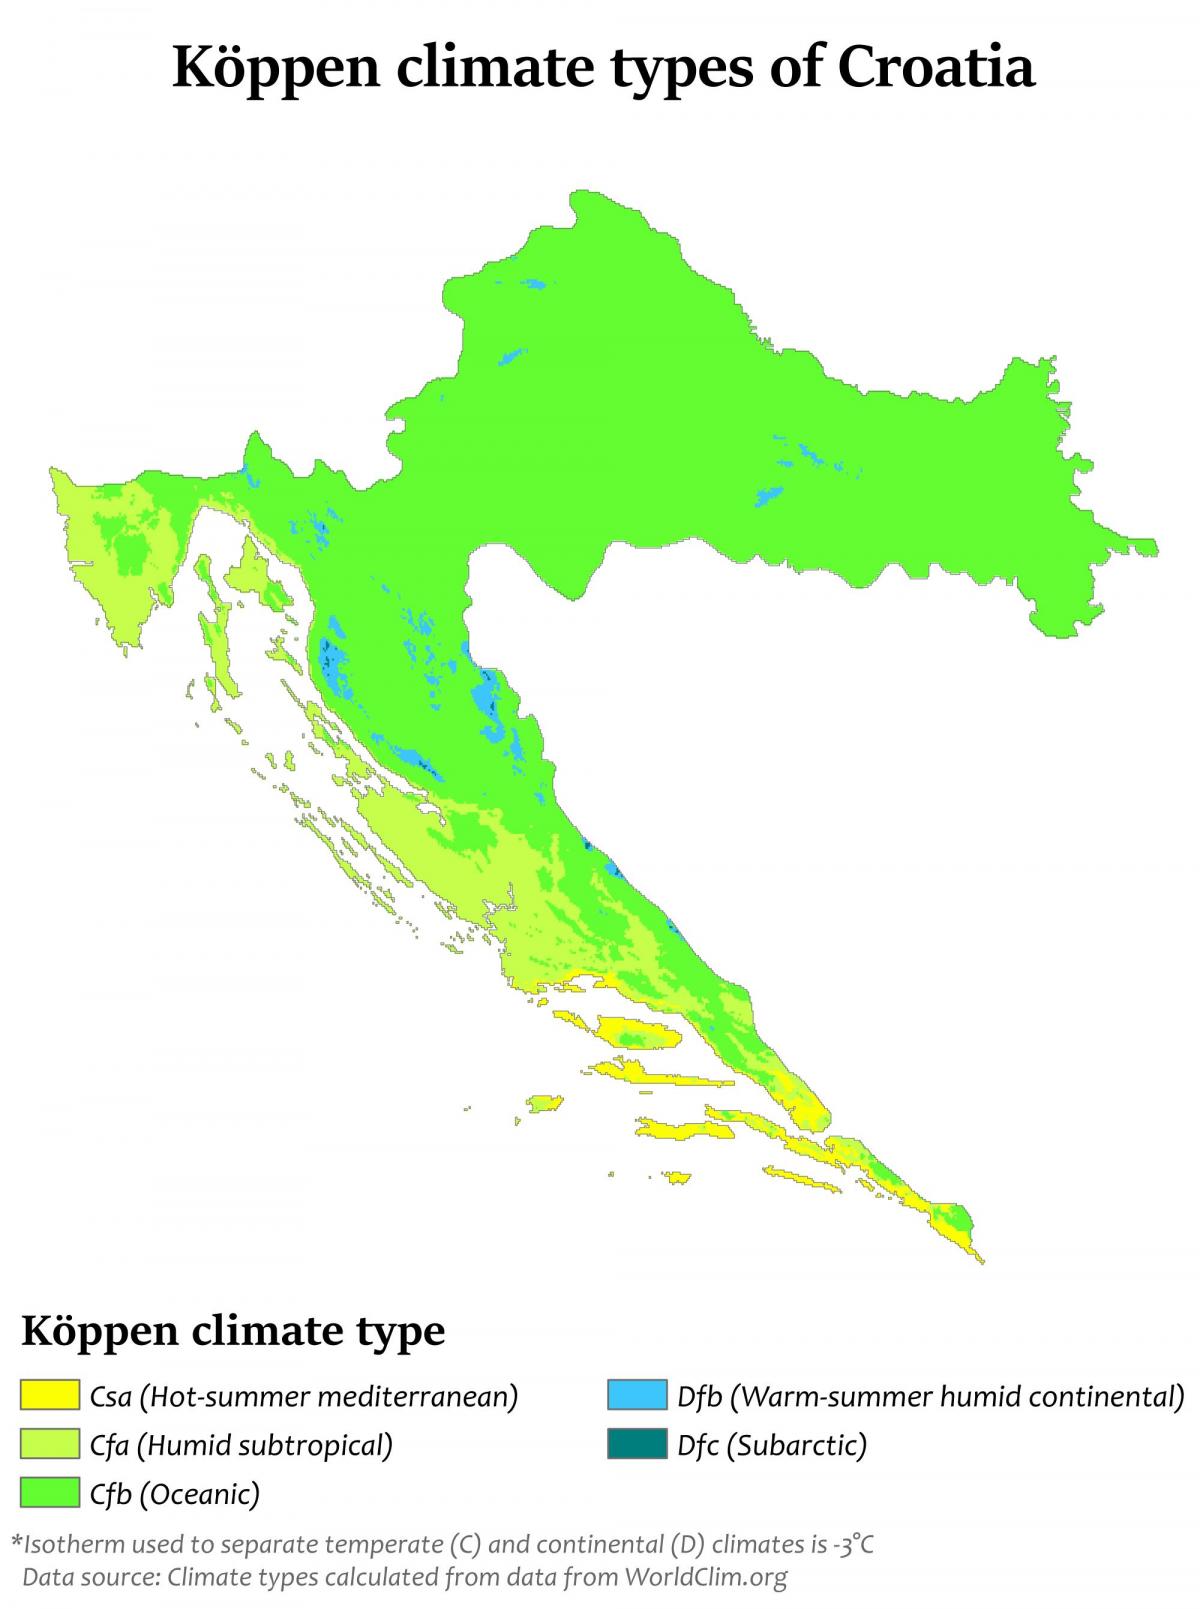 Mapa de temperatura de Croacia